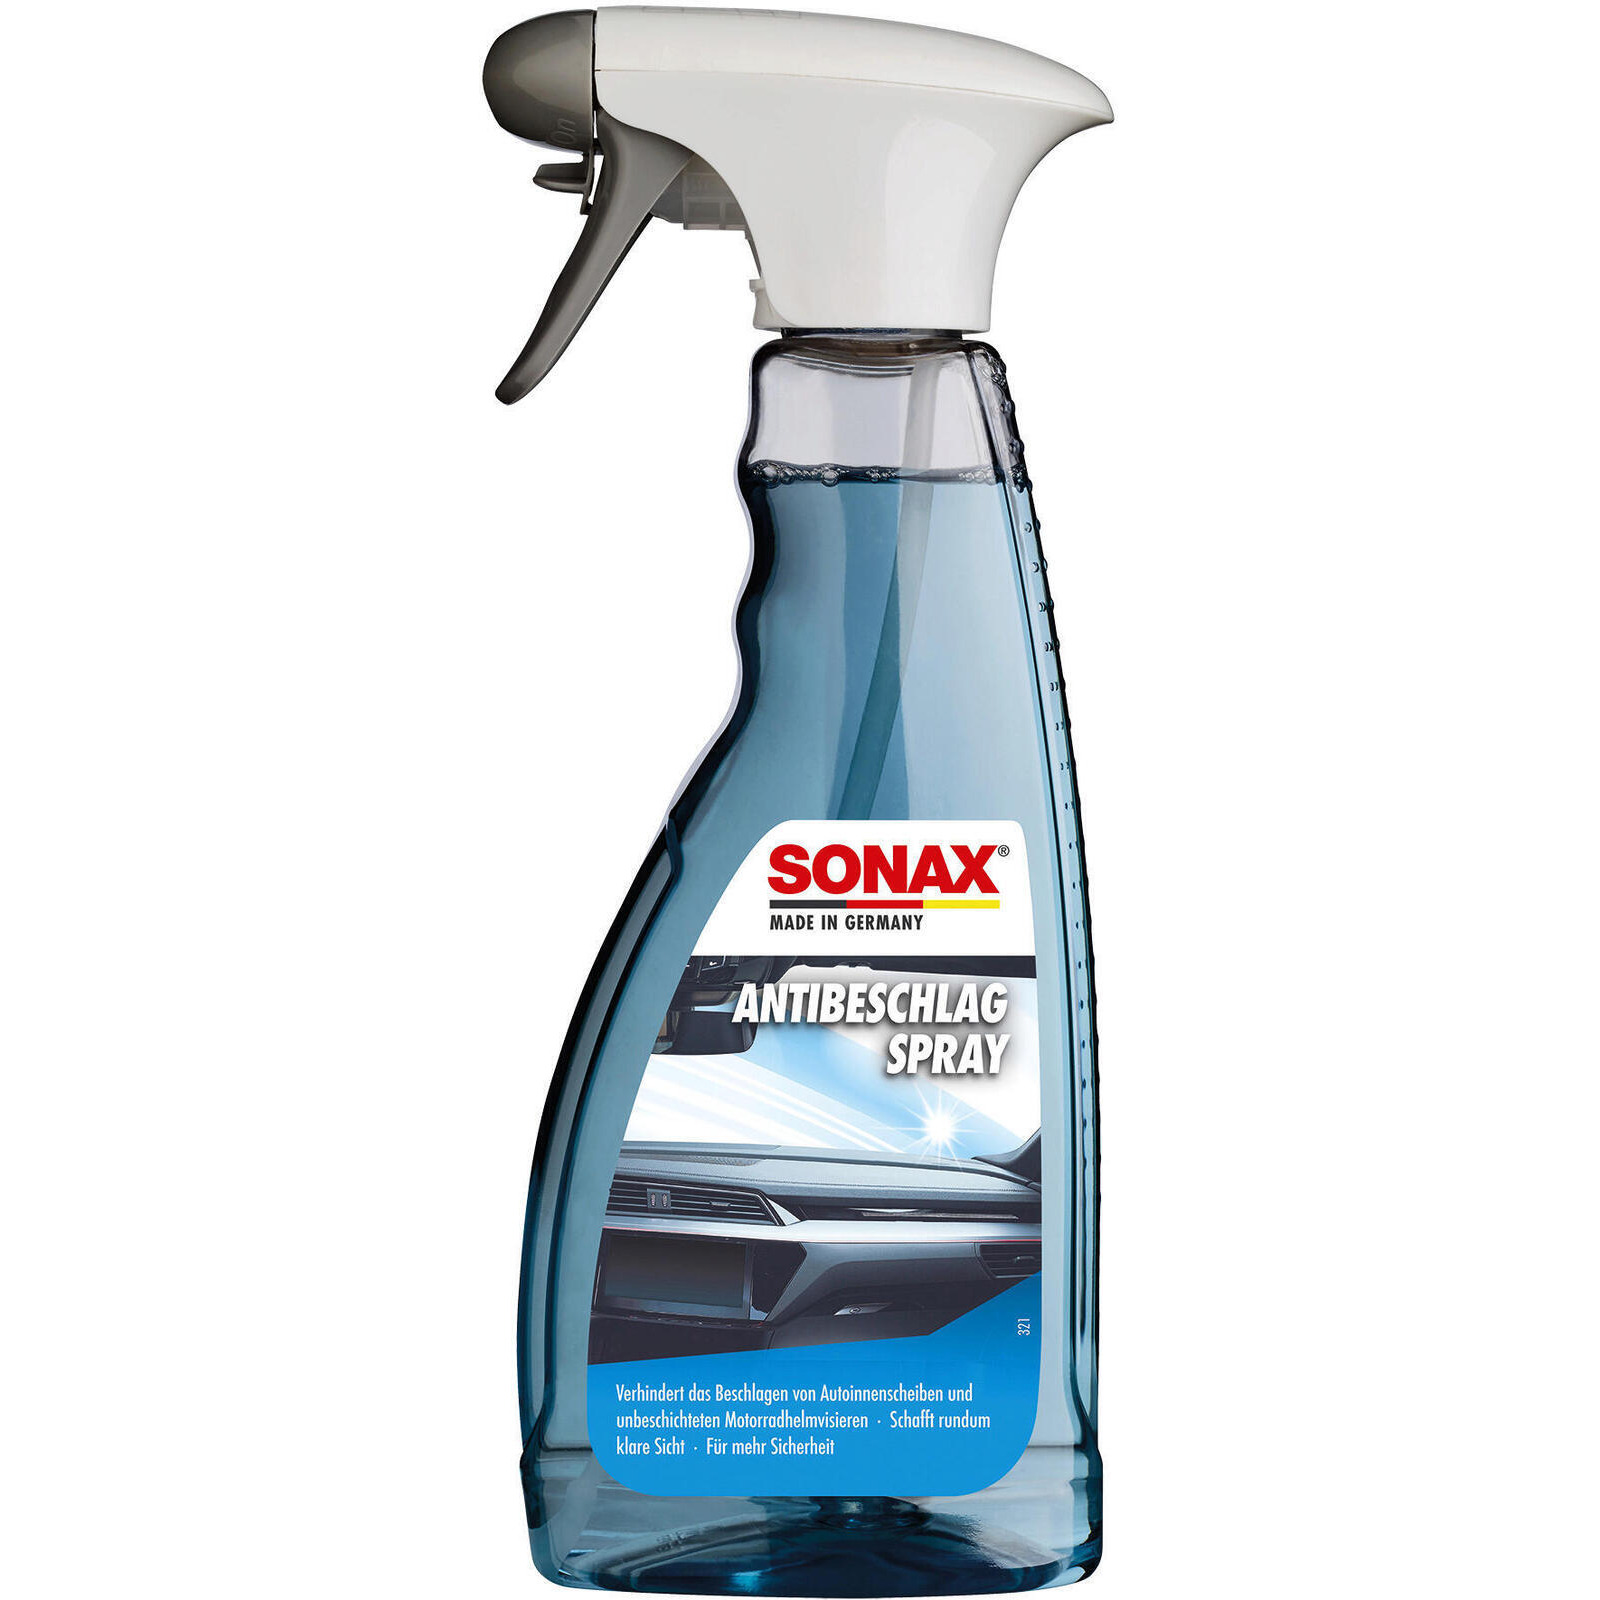 SONAX Antifreeze, window cleaning system AntiMistSpray